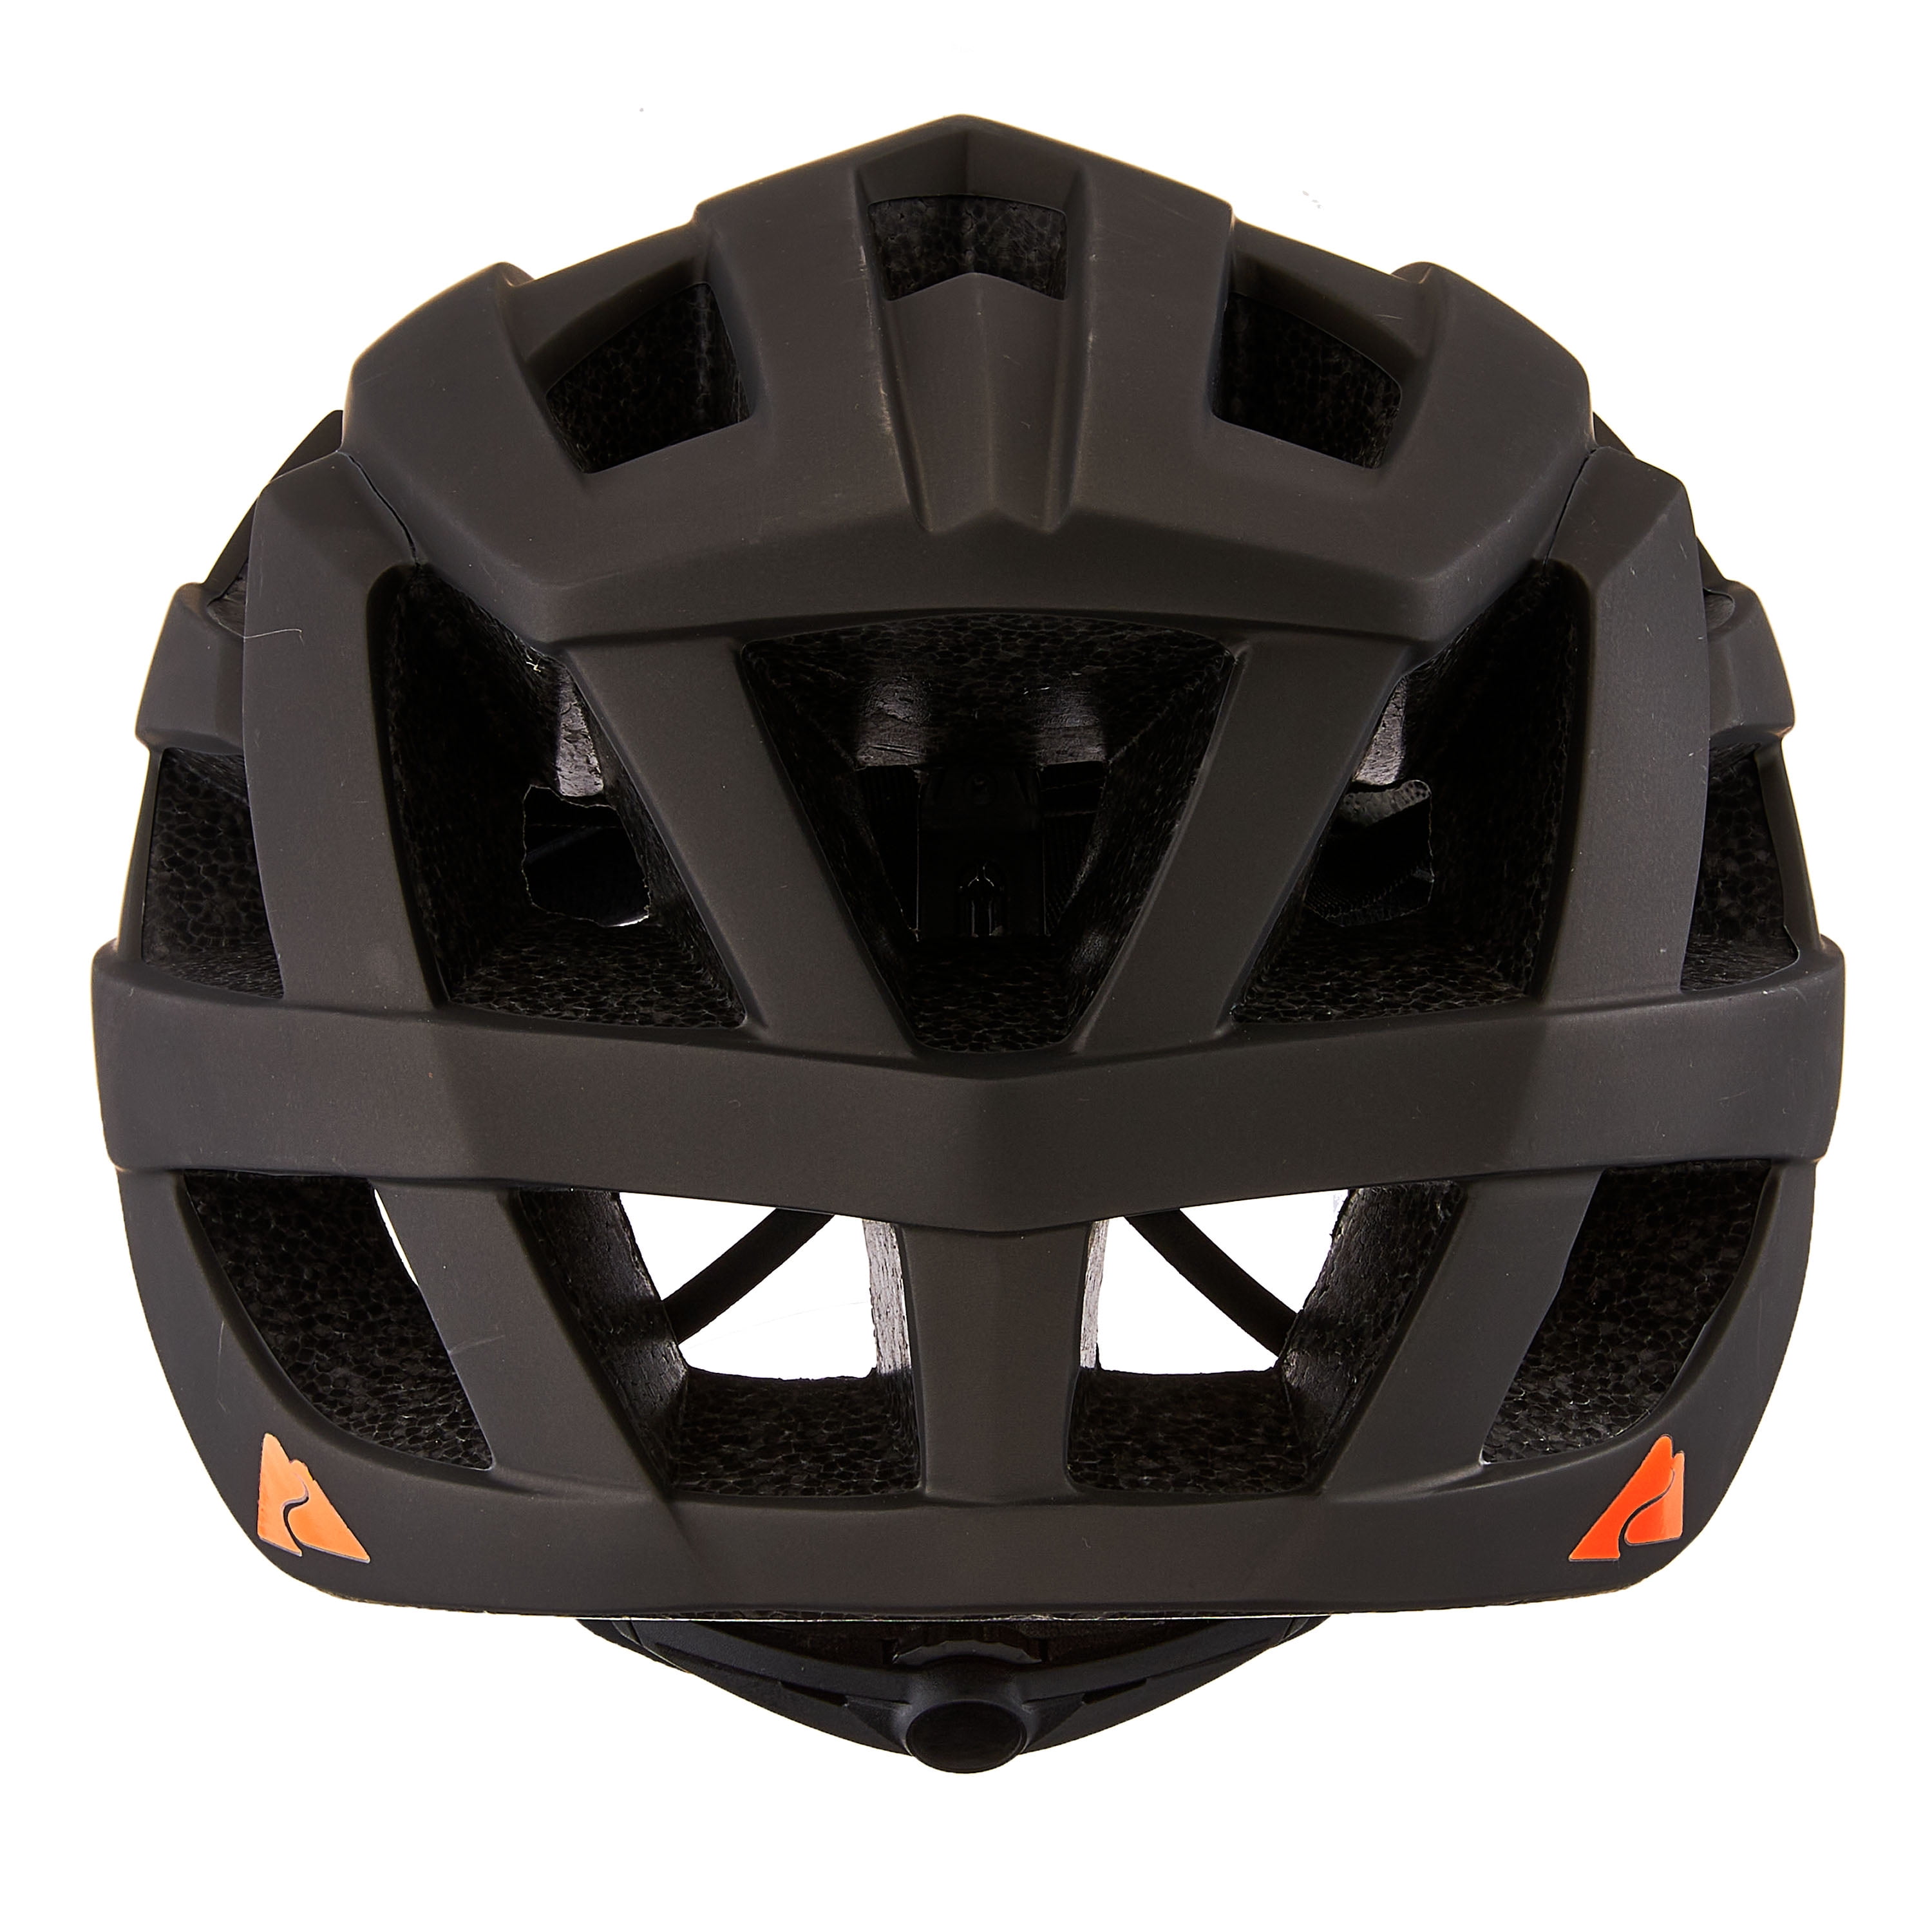 Ozark Trail Adult Bike Helmet, Black (Ages 14+)